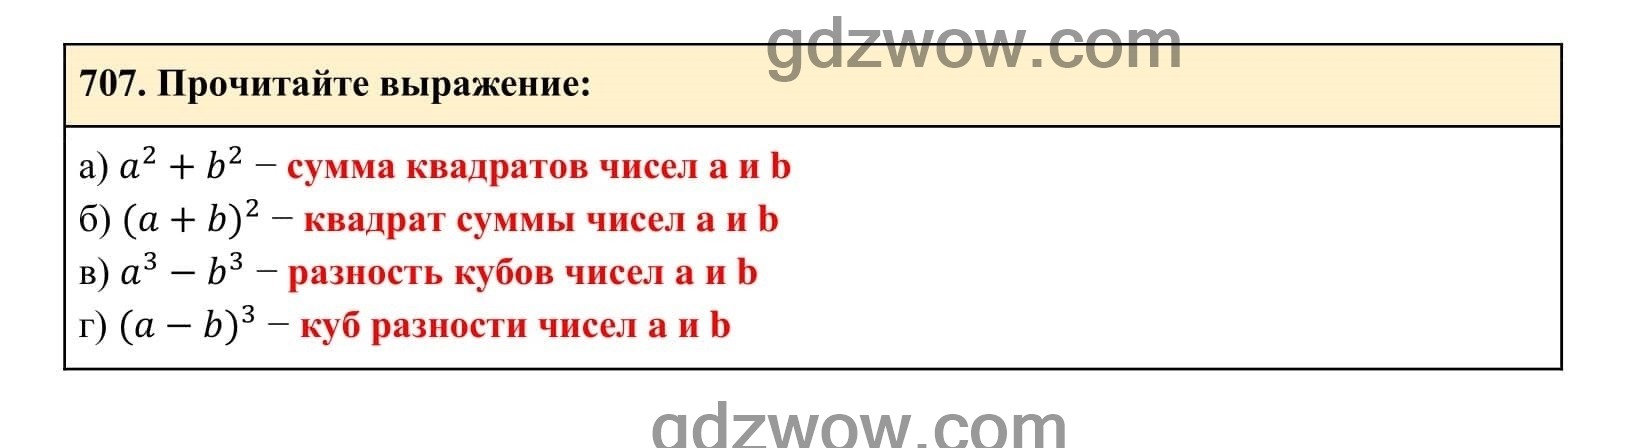 Упражнение 707 - ГДЗ по Алгебре 7 класс Учебник Макарычев (решебник) - GDZwow